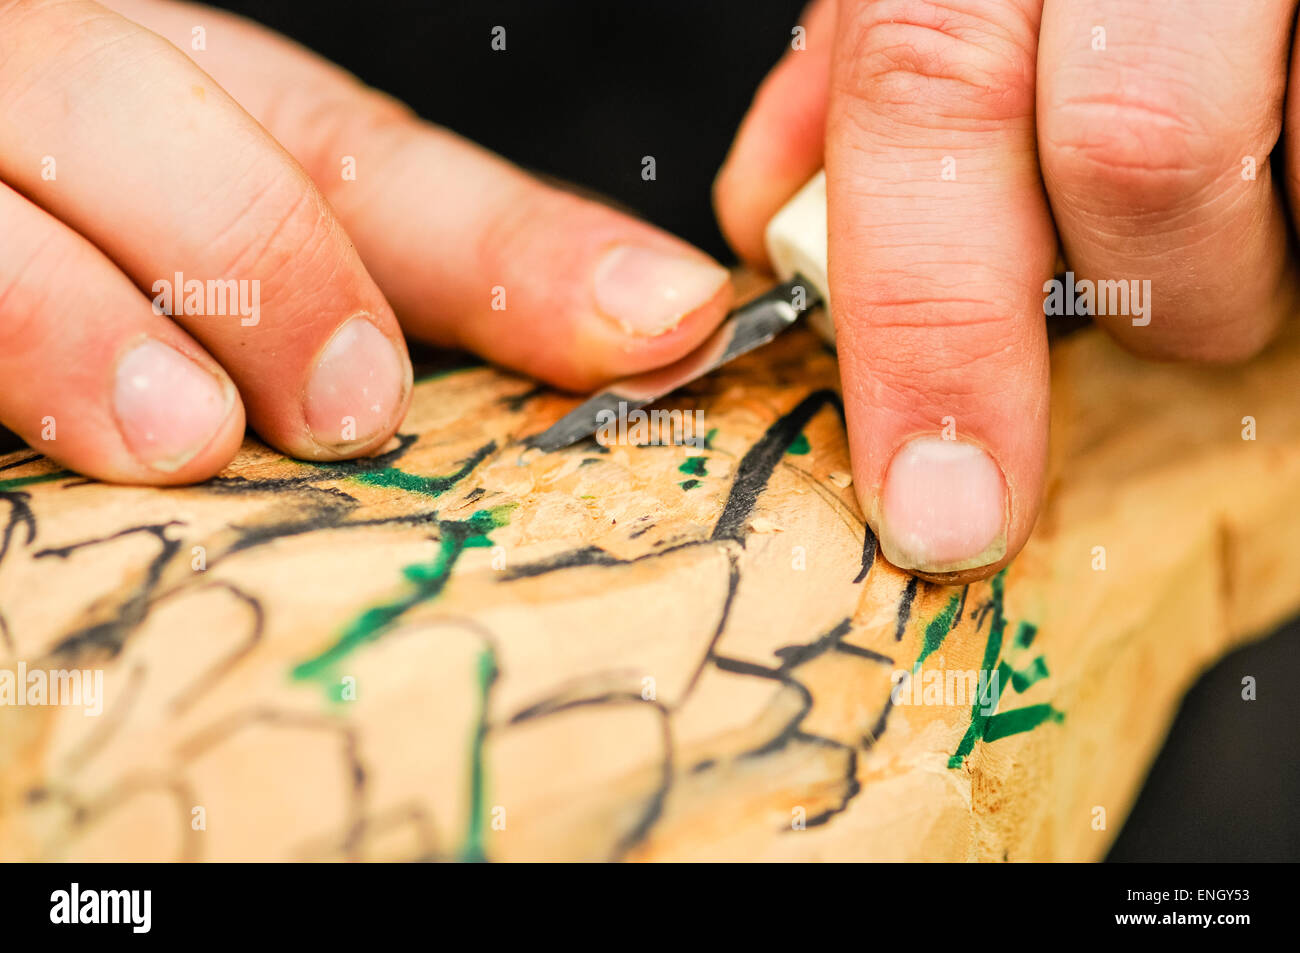 Un homme utilise un petit ciseau pour découper un canard en bois Banque D'Images